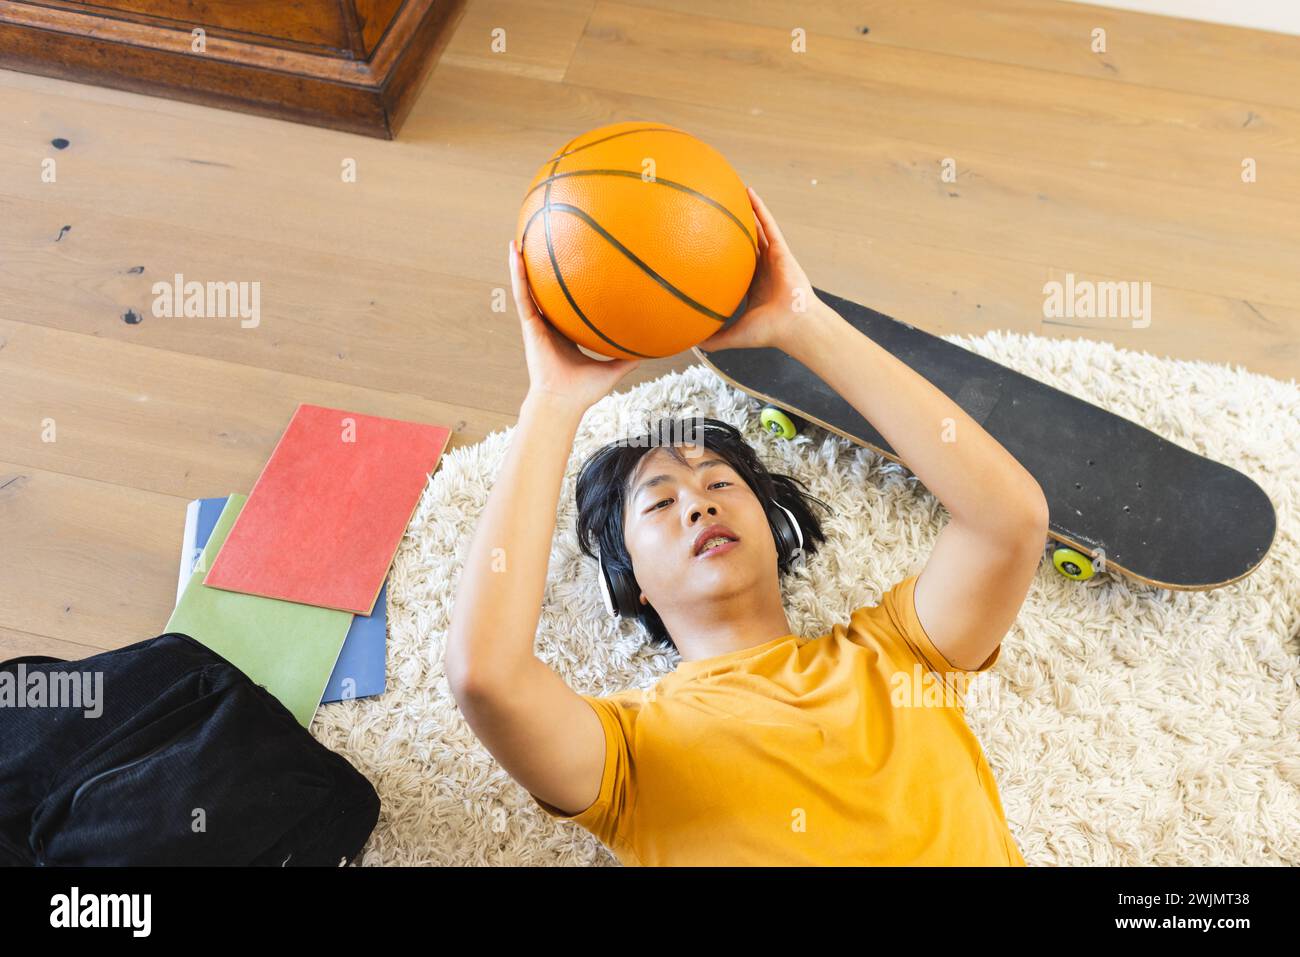 Adolescente asiatico giace sul pavimento di casa, tenendo in mano una pallacanestro Foto Stock